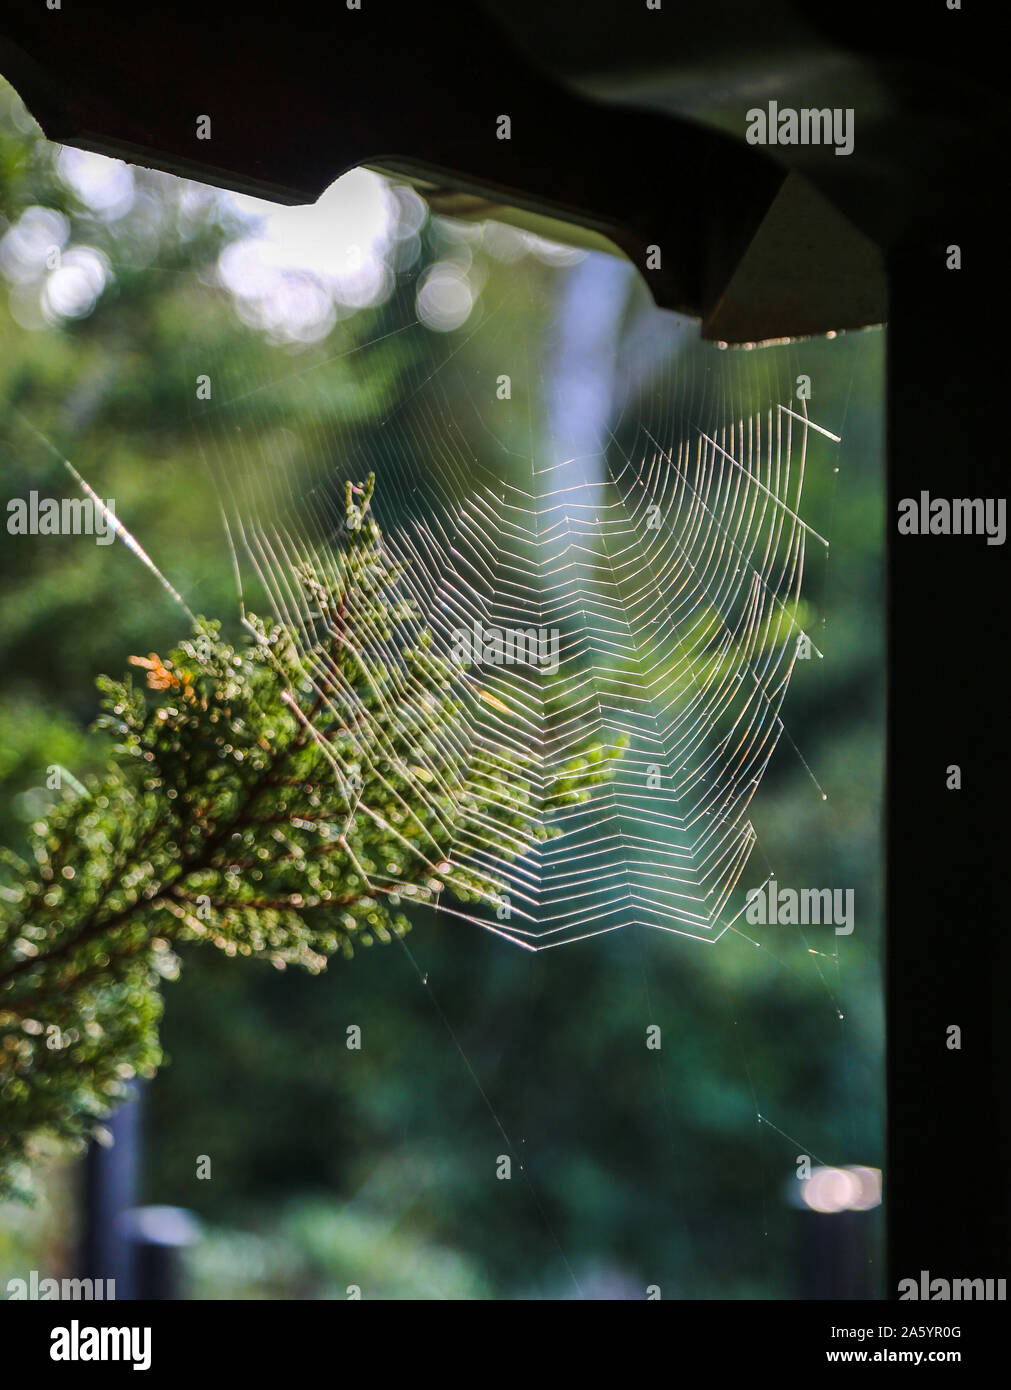 Spinnennetz in der Ecke, vor grünem Hintergrund Stockfoto